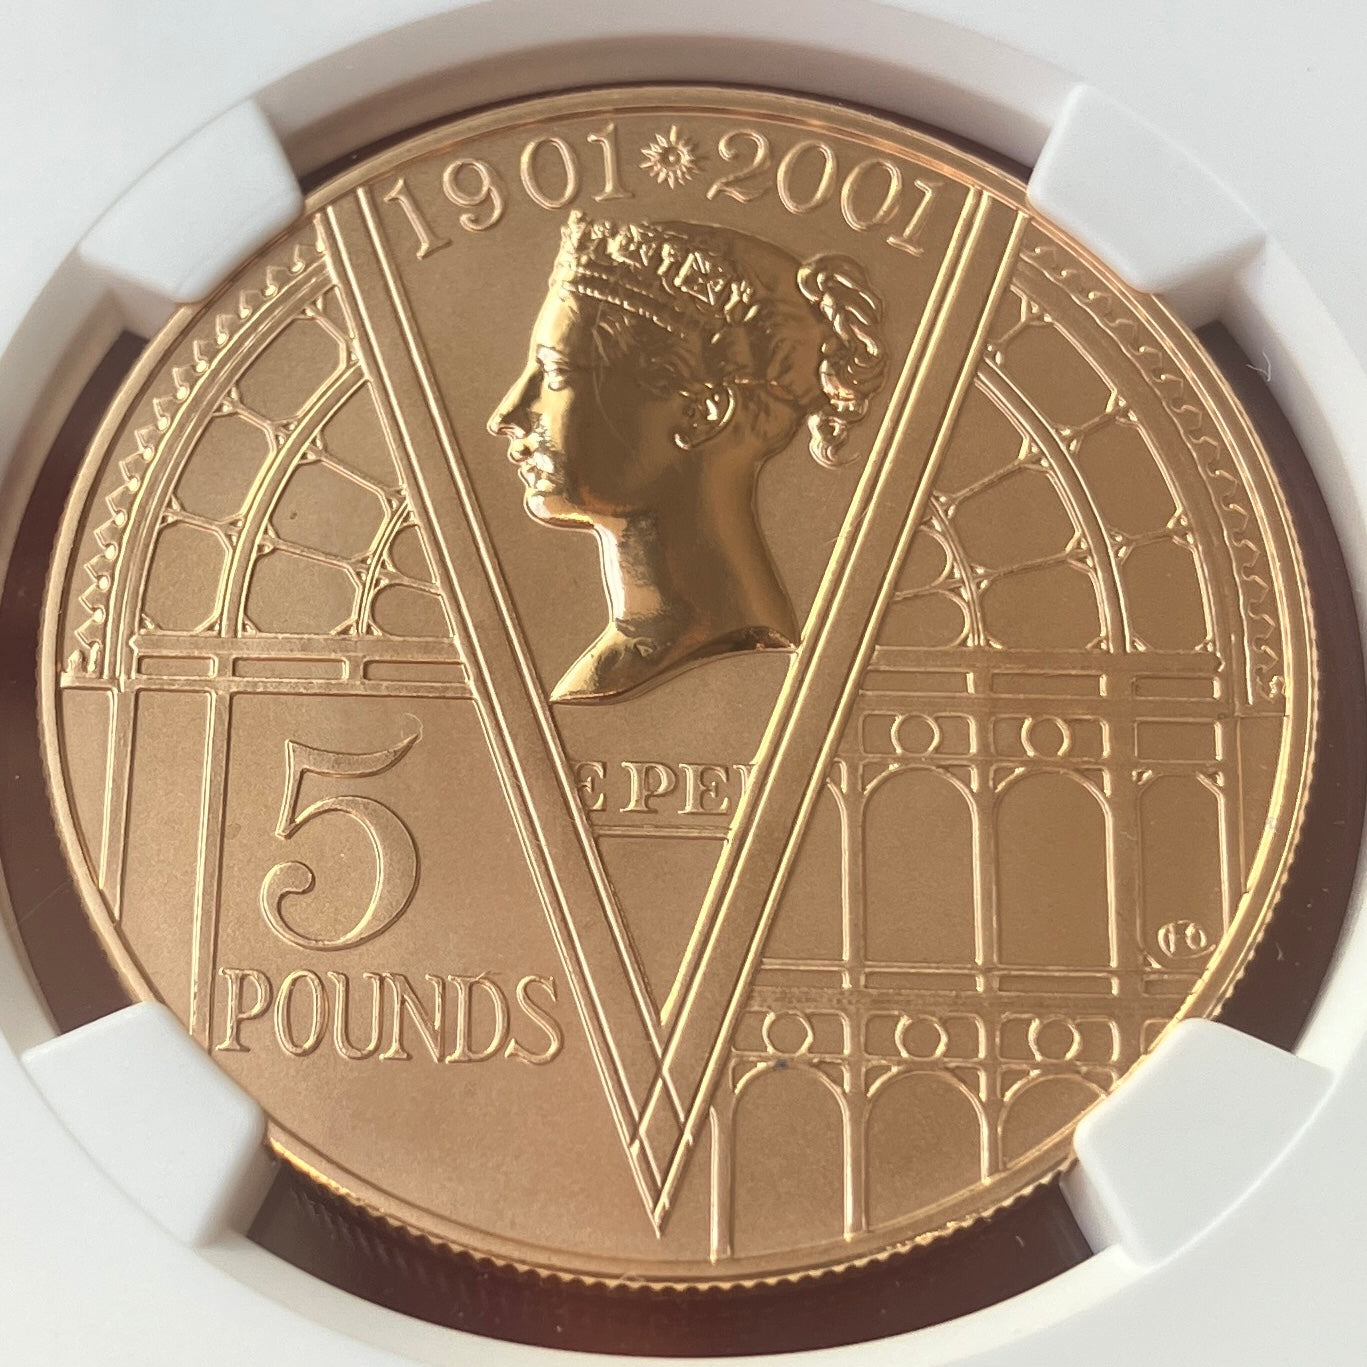 2001年 英国 ヴィクトリア女王没後100周年記念 5ポンド金貨 リバース